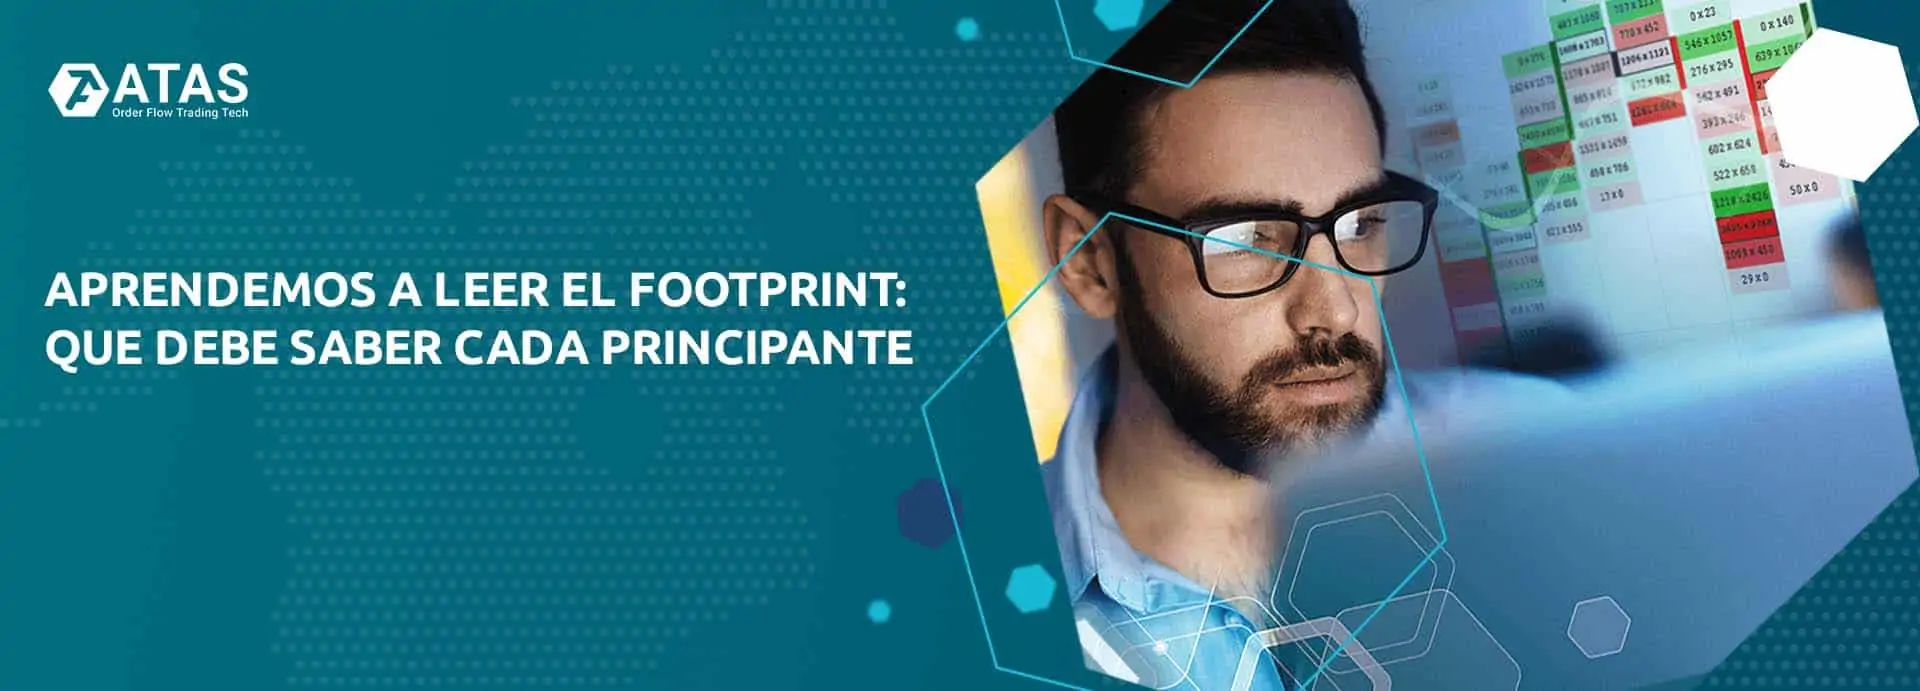 Aprendemos a leer el Footprint que debe saber cada principante